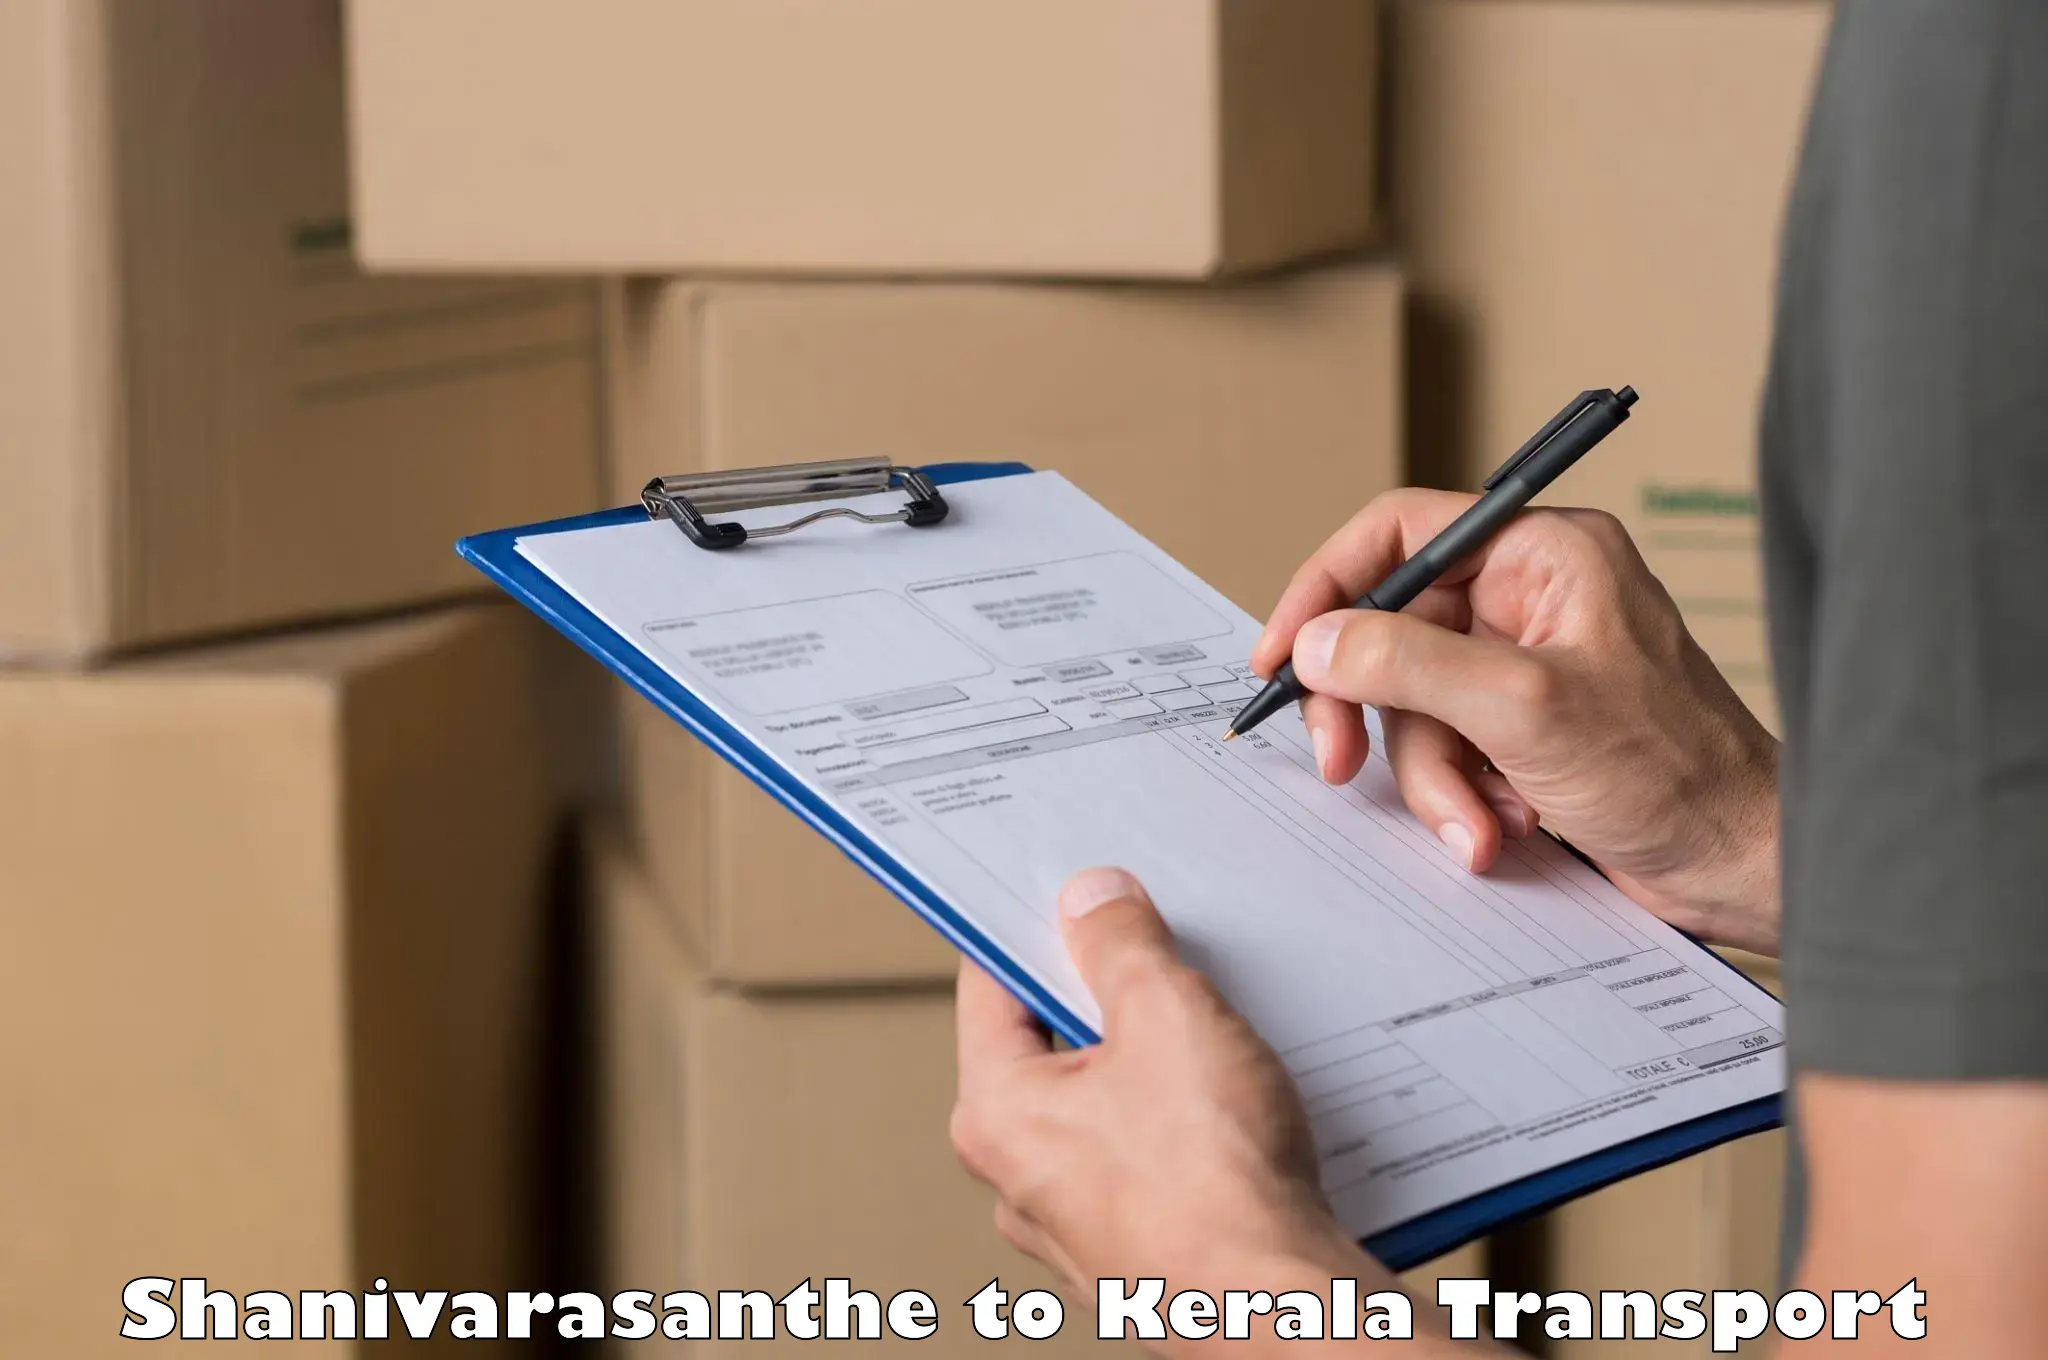 Cargo transportation services in Shanivarasanthe to Kothanalloor